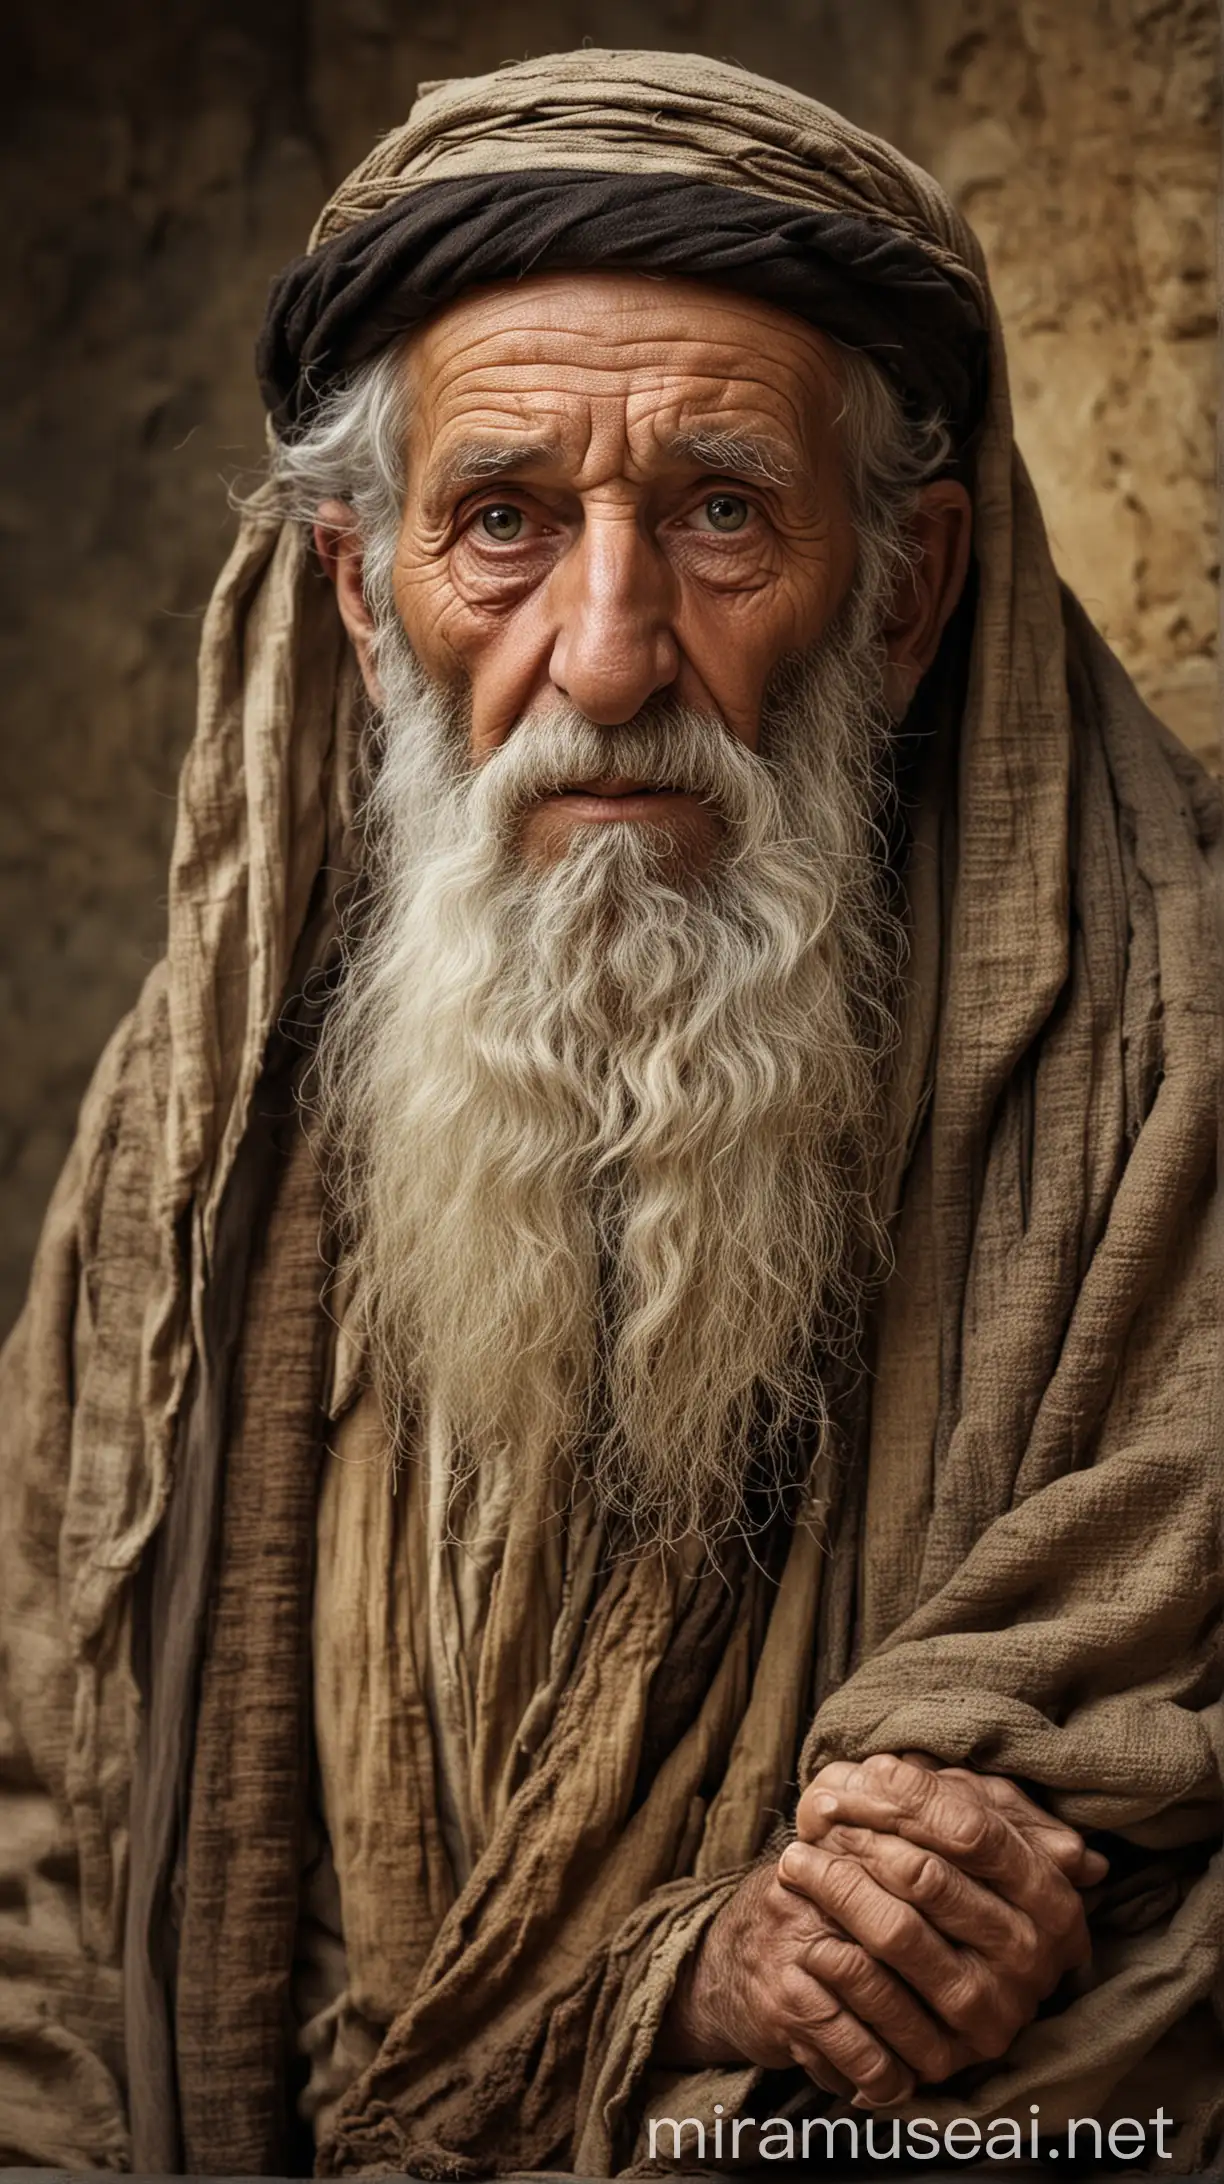 Elderly Jewish Scholar in Ancient Jerusalem